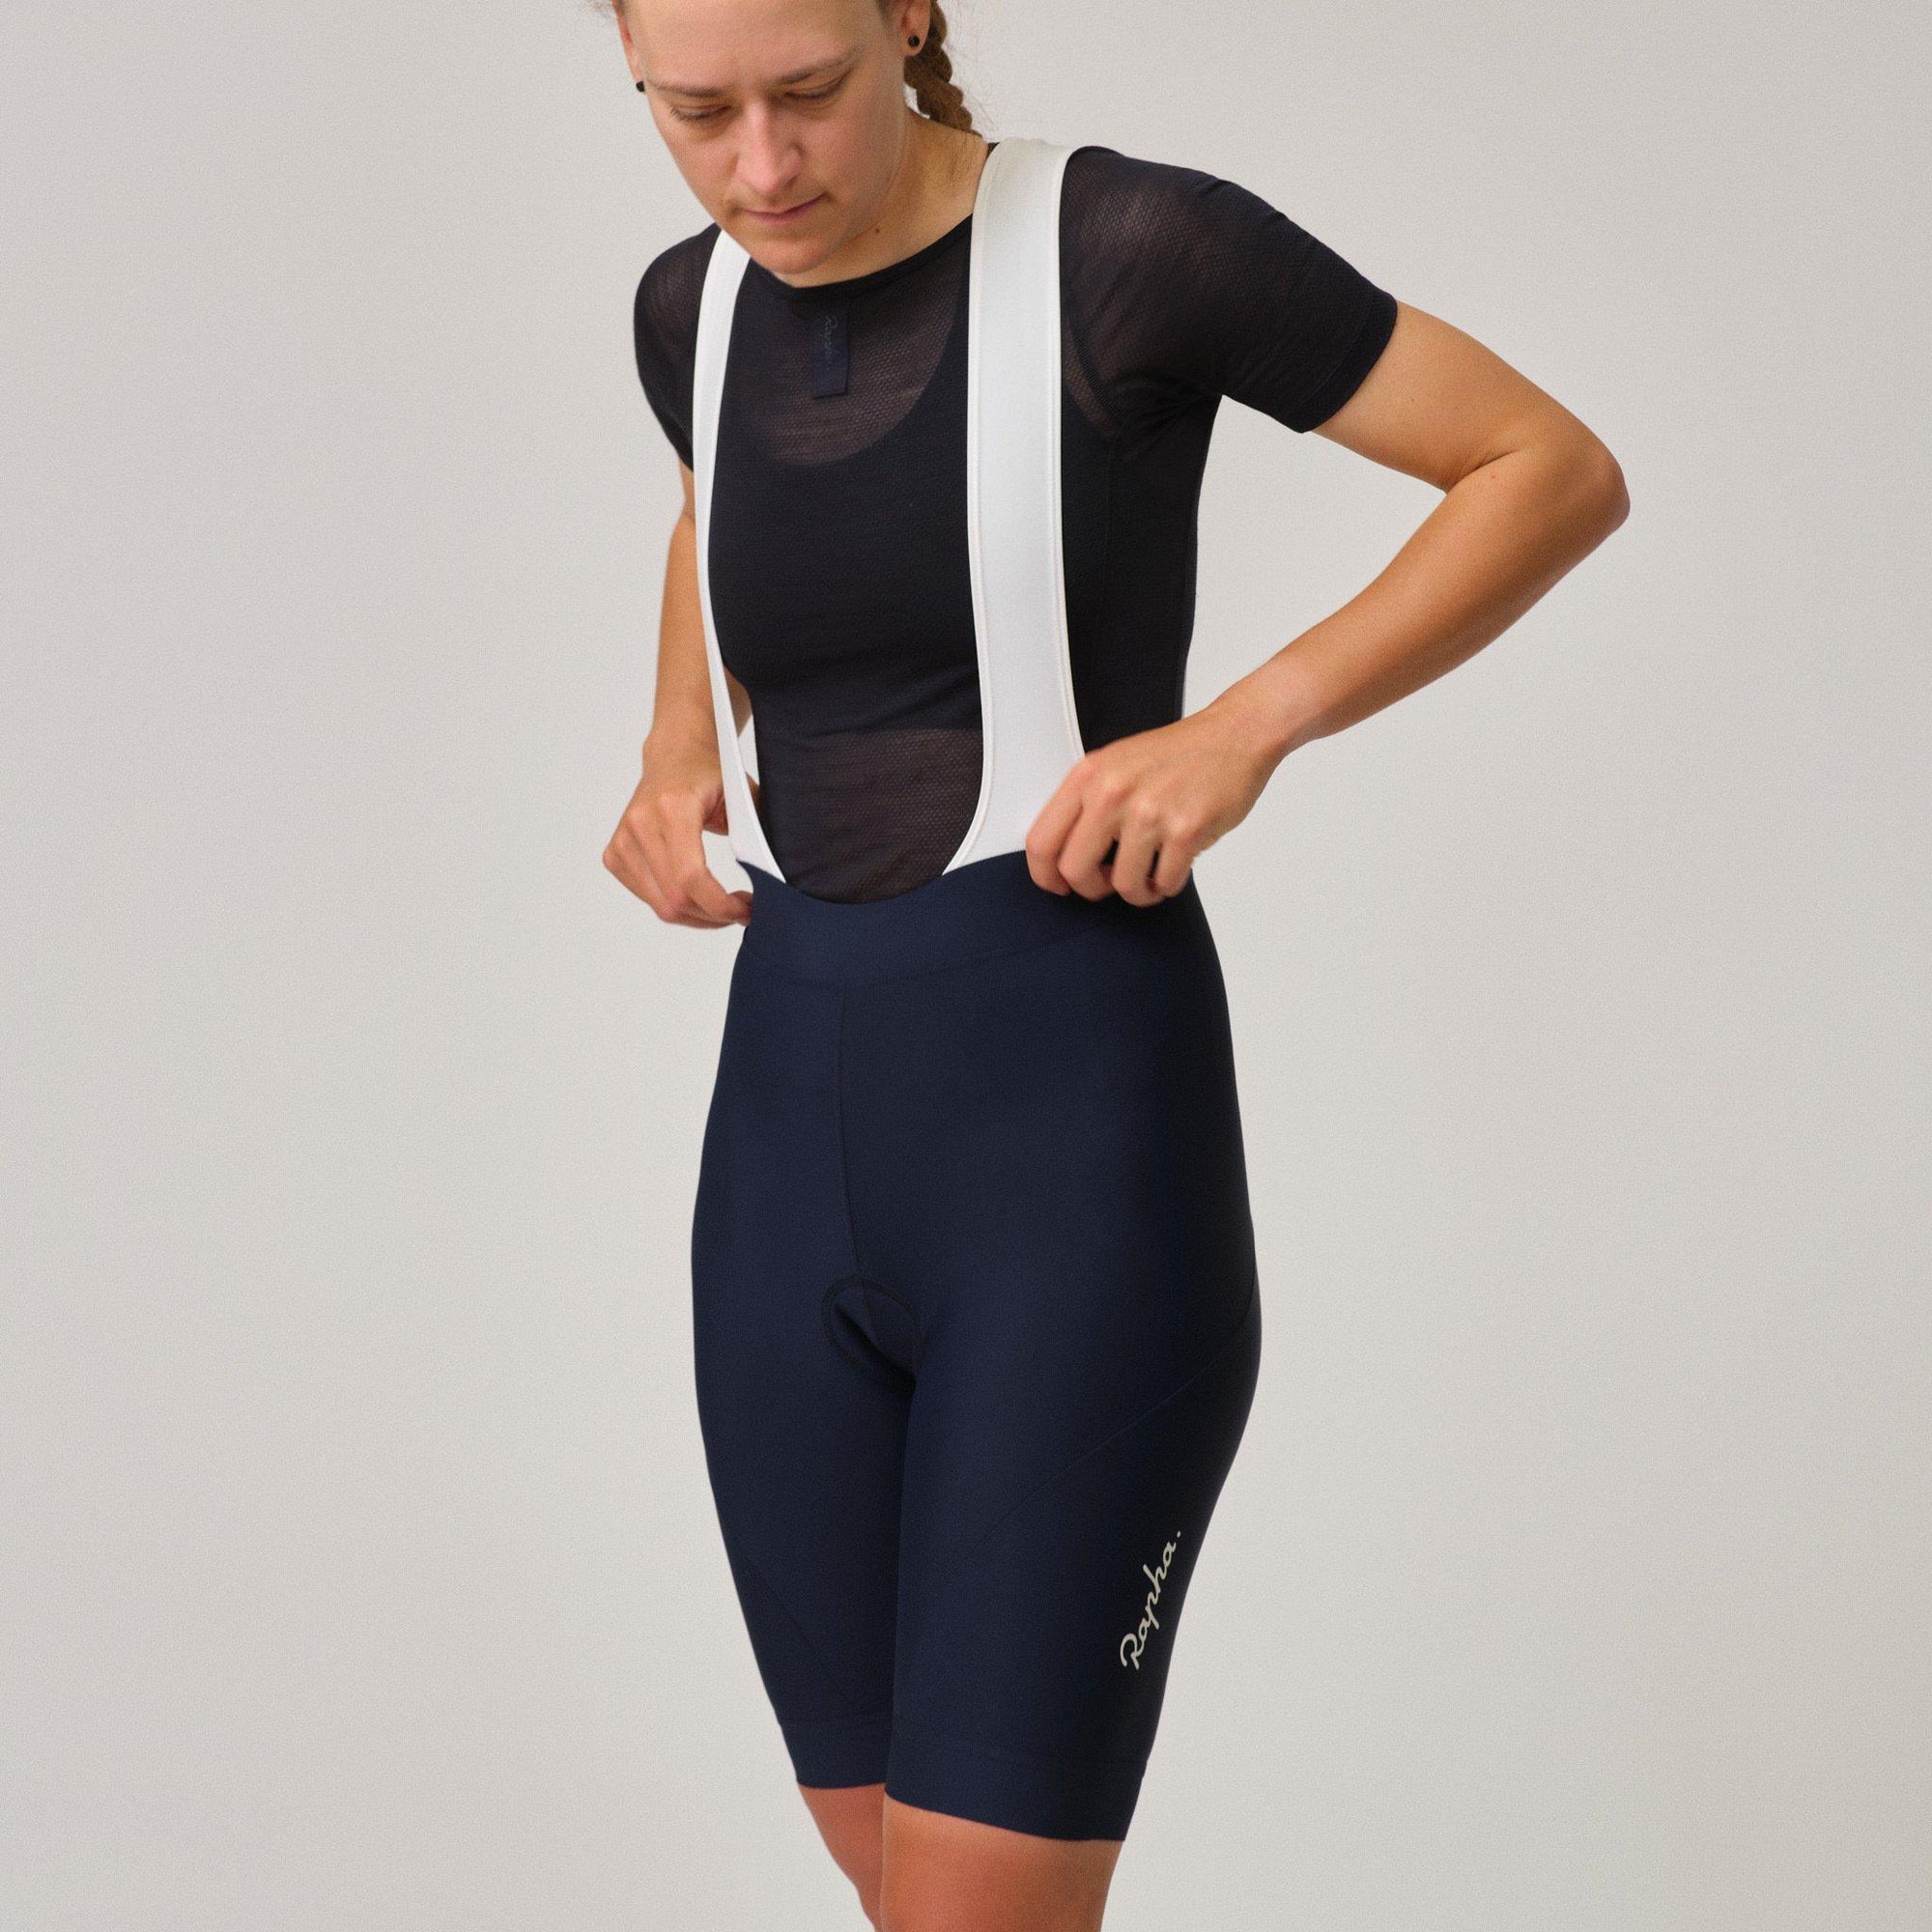 Women&#39;s Core Bib Shorts - Dark Navy/White